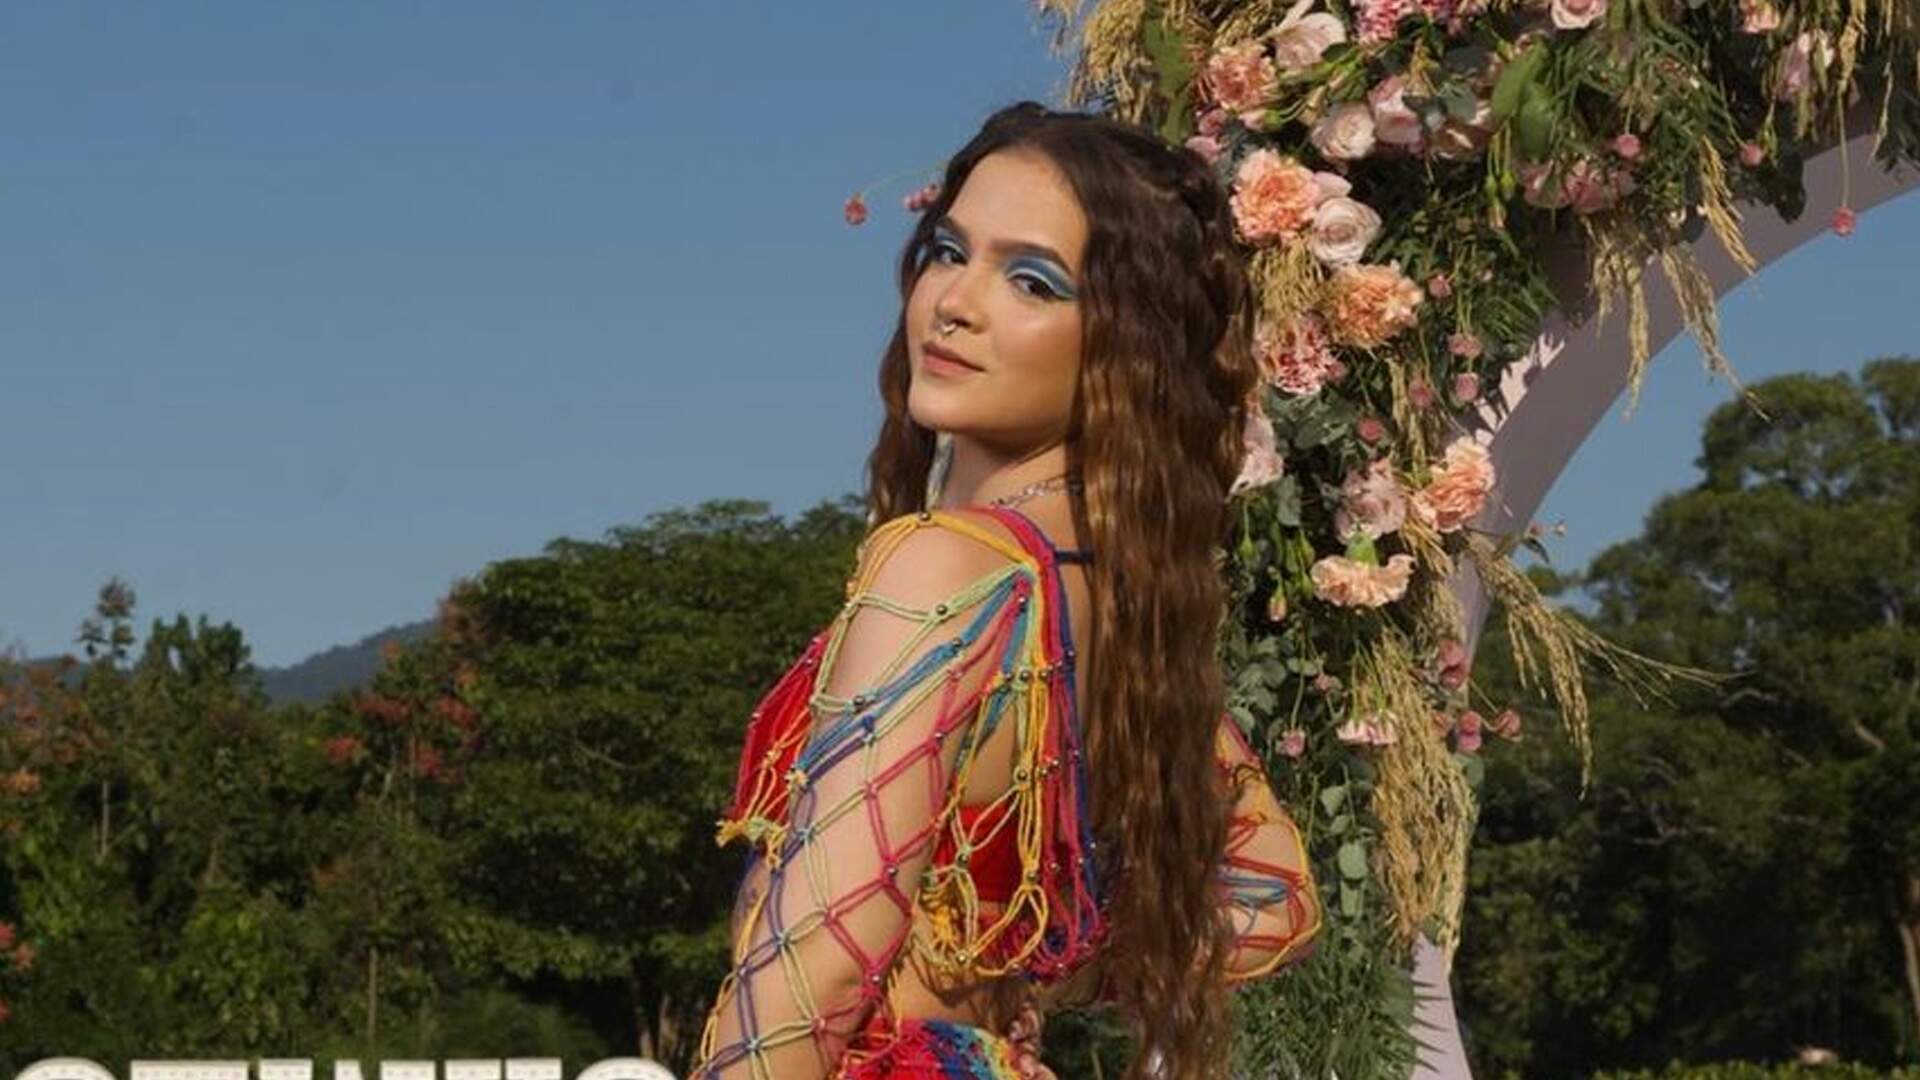 Mel Maia exibe look polêmico para celebração de festa de 18 anos: “Começou!” - Metropolitana FM